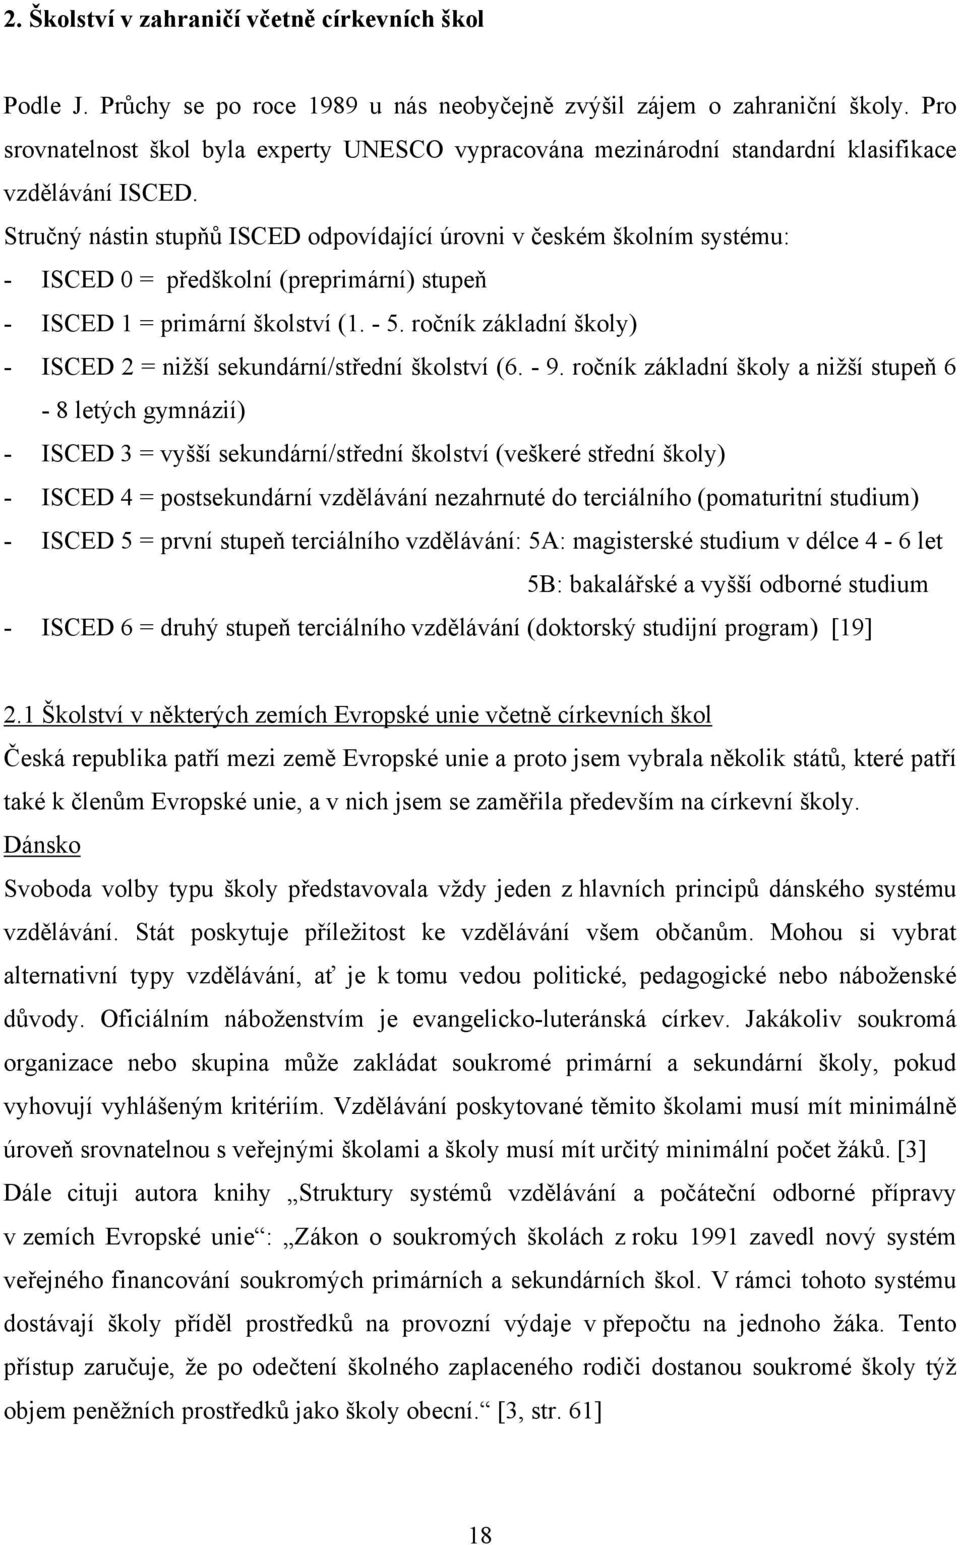 Stručný nástin stupňů ISCED odpovídající úrovni v českém školním systému: - ISCED 0 = předškolní (preprimární) stupeň - ISCED 1 = primární školství (1. - 5.